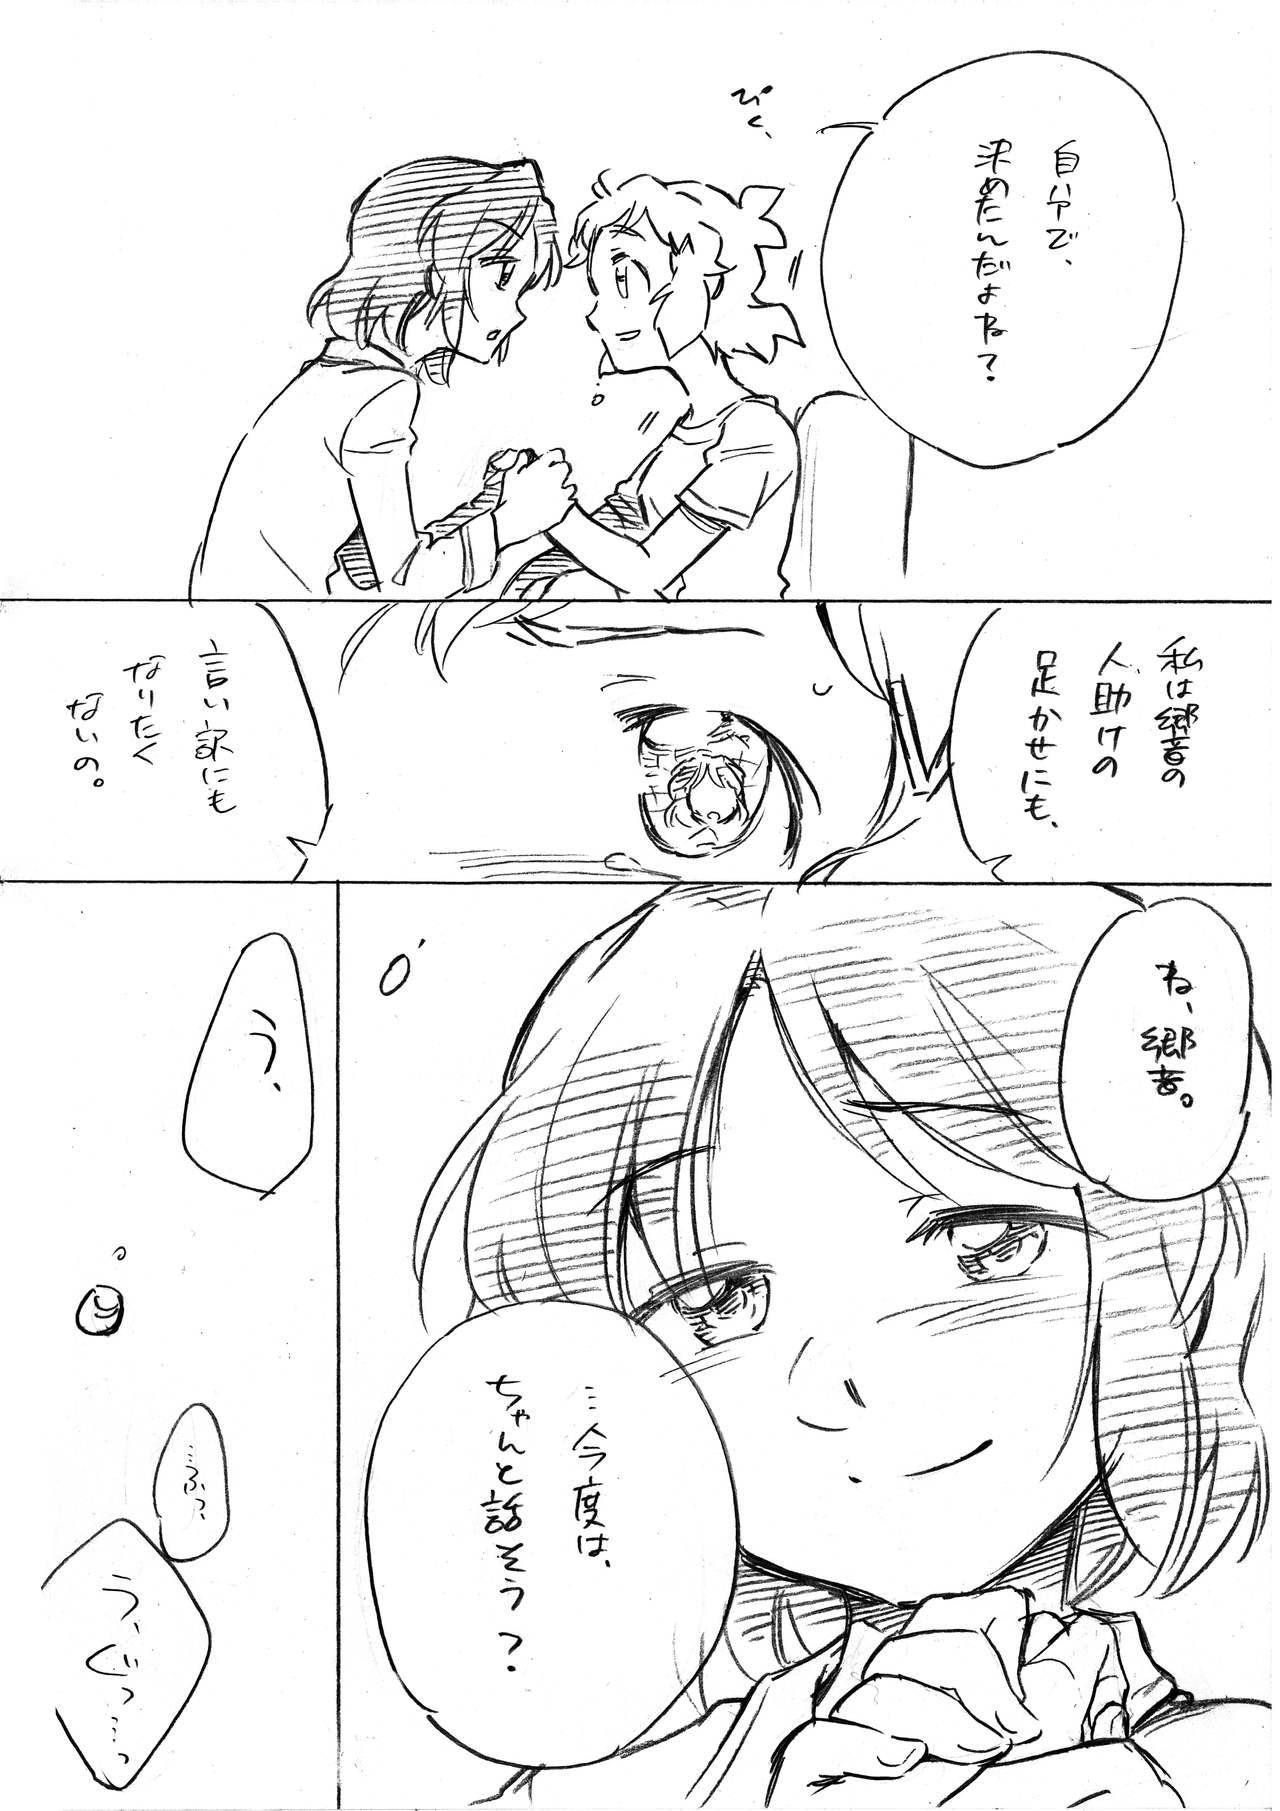 Girlfriend Umi no Mieru Basho no Futari no Ouchi. - Senki zesshou symphogear Interview - Page 6